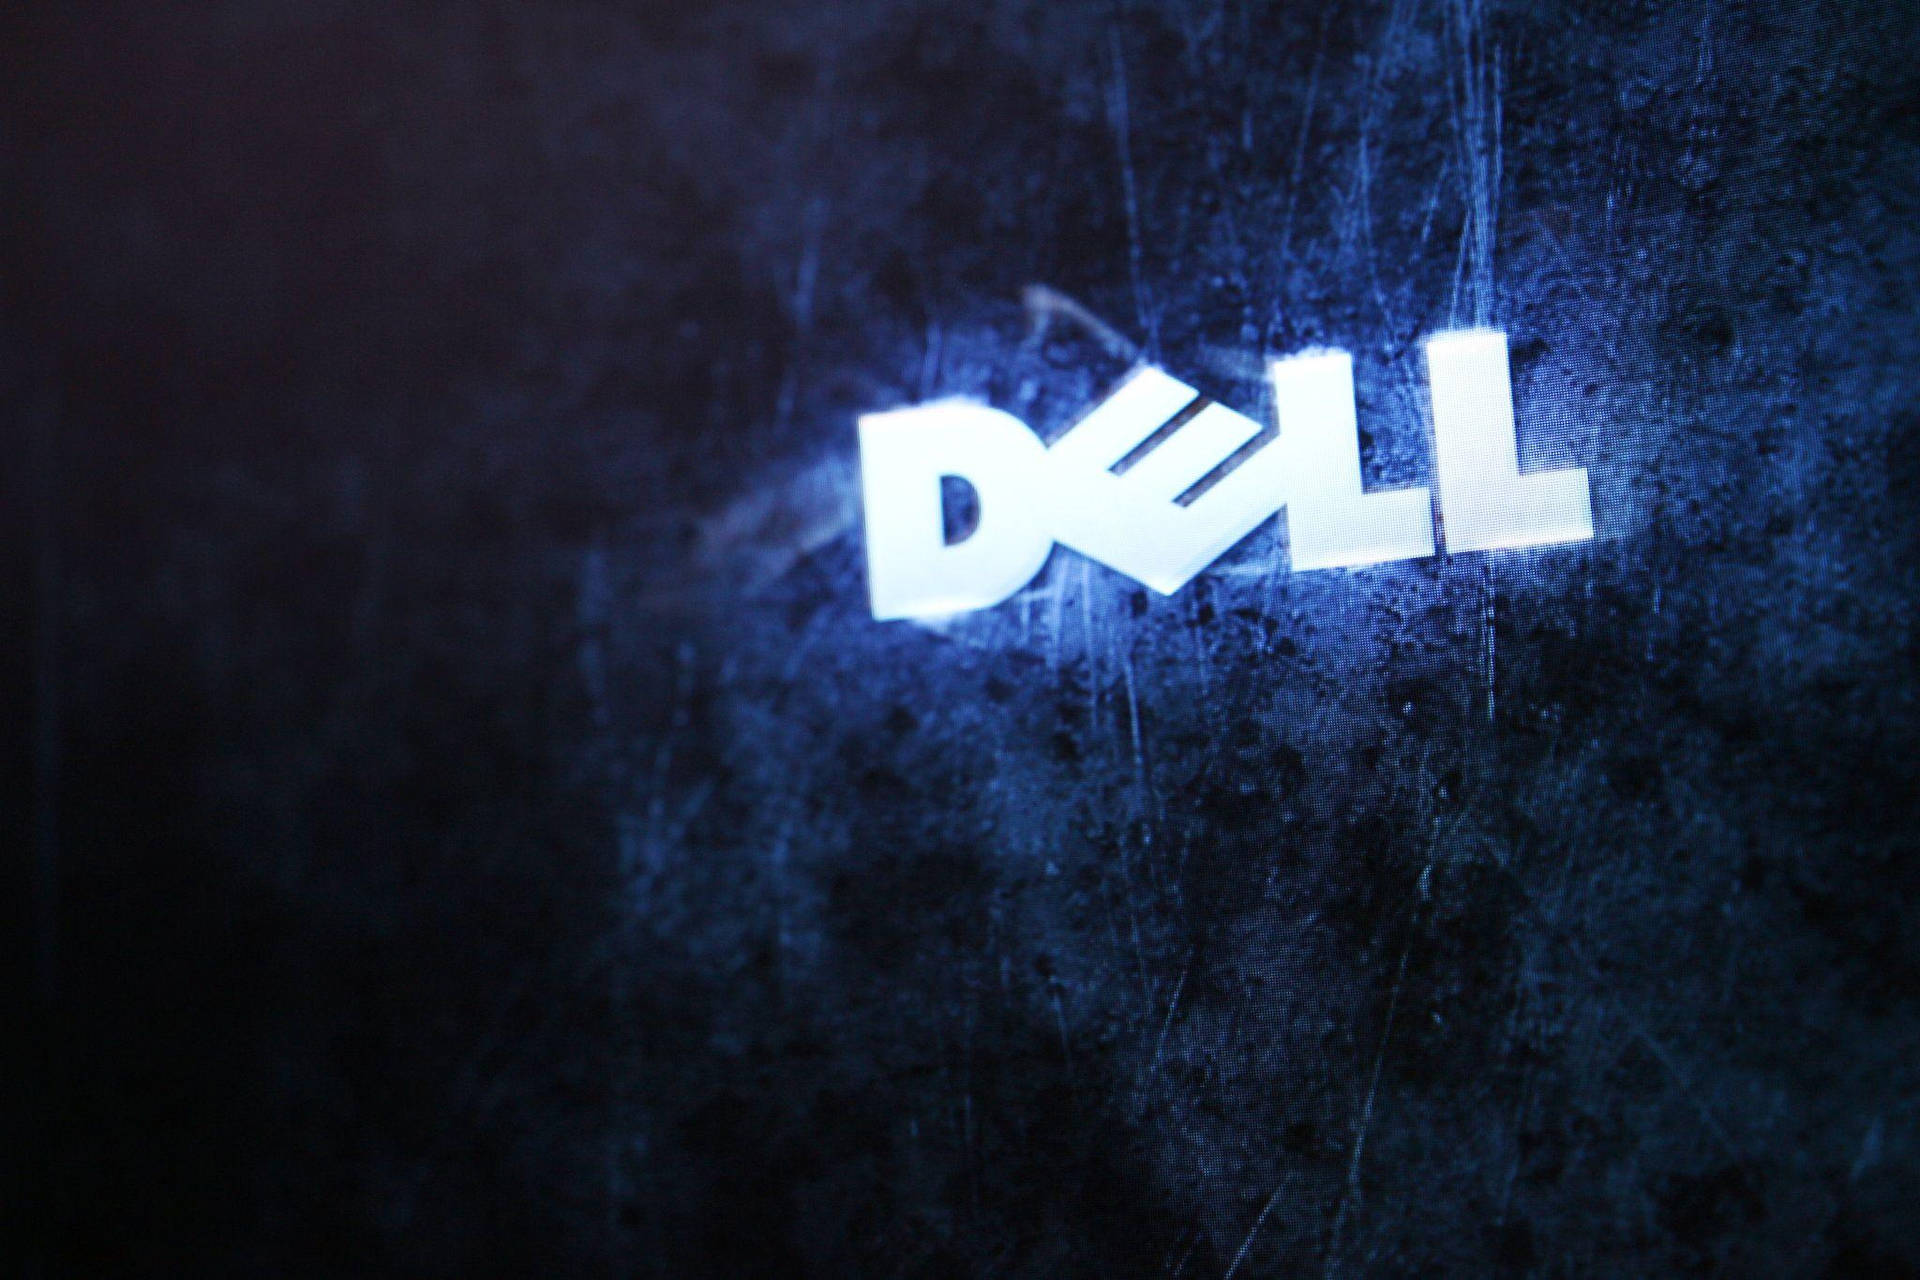 Glitchy Dell Hd Logo Wallpaper